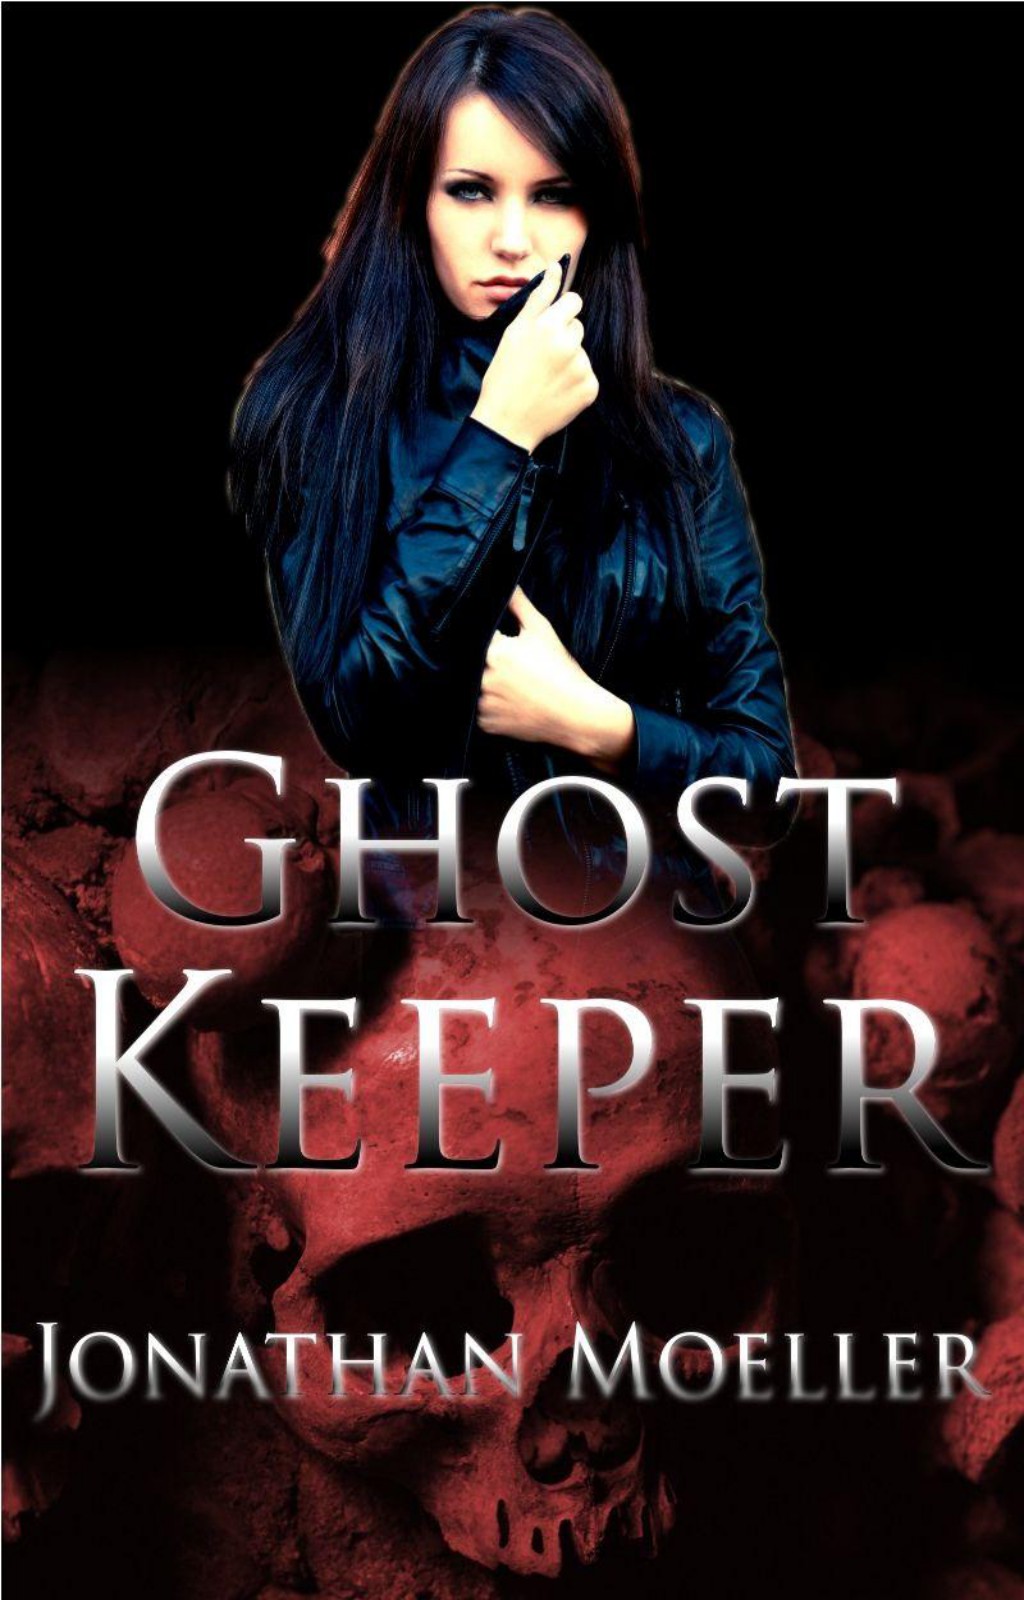 Ghost Keeper by Jonathan Moeller